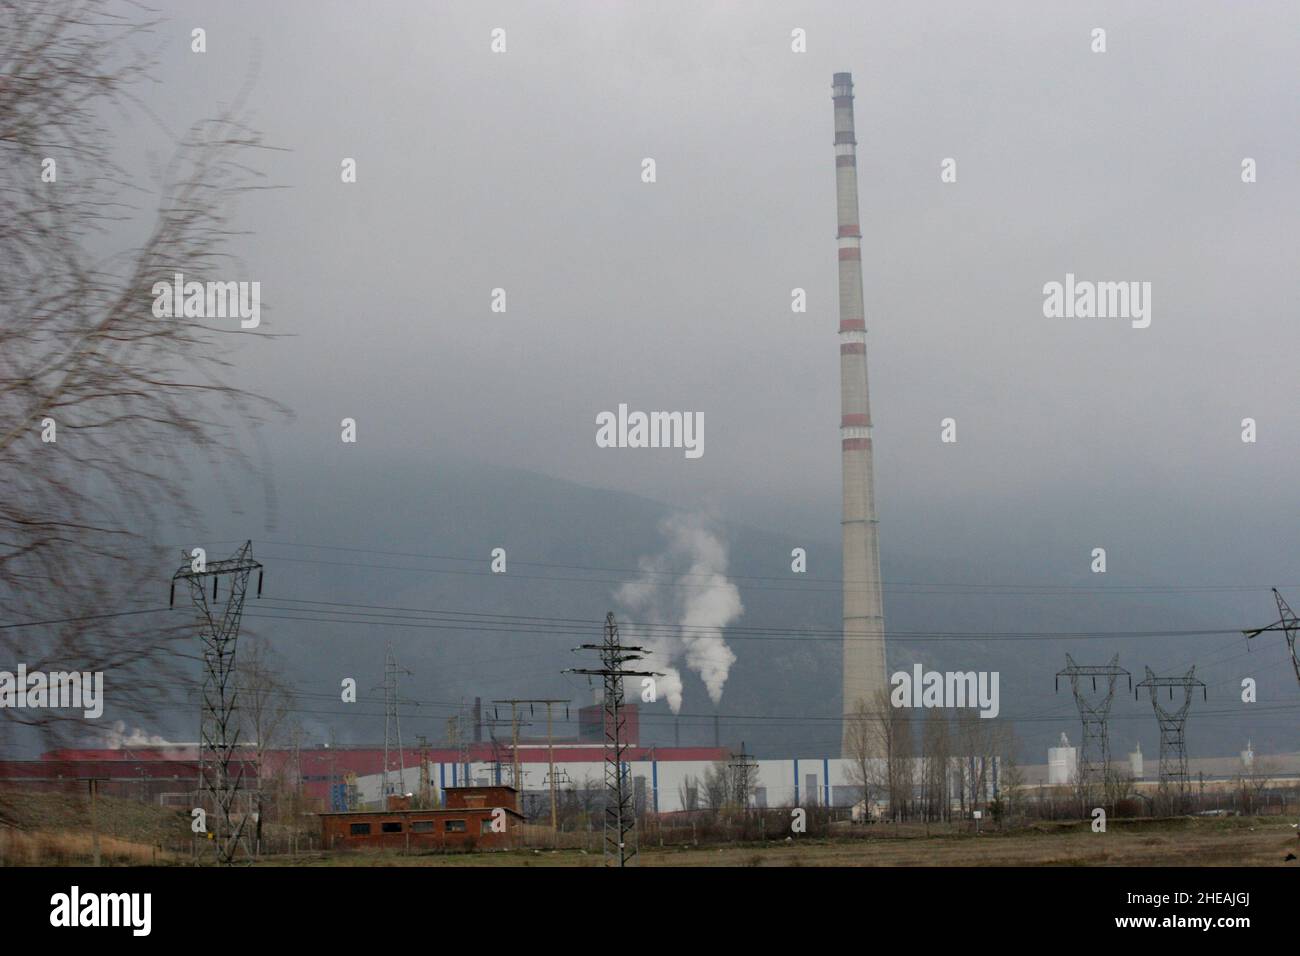 Contaminación industrial de una fábrica y una central eléctrica Foto de stock